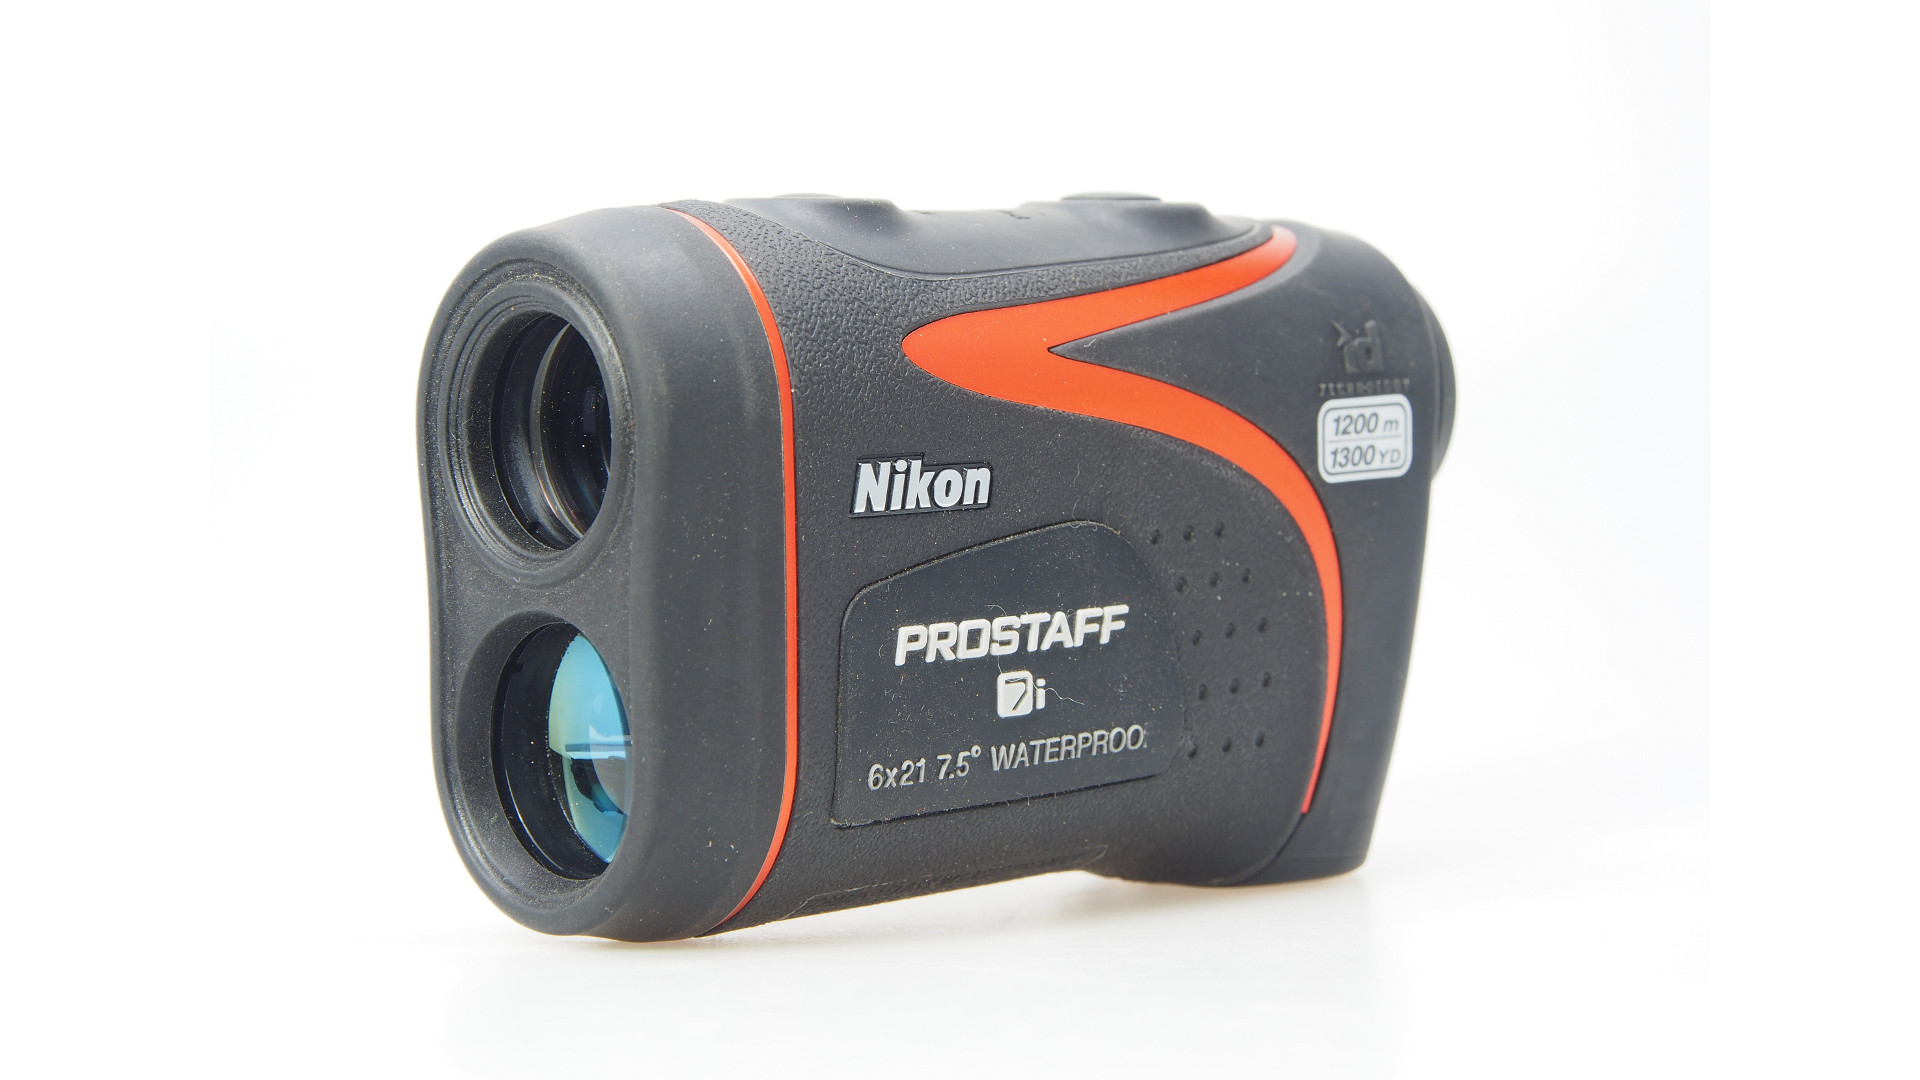 Nikon Prostaff 7i Laser Rangefinder Review - AR15 Hunter